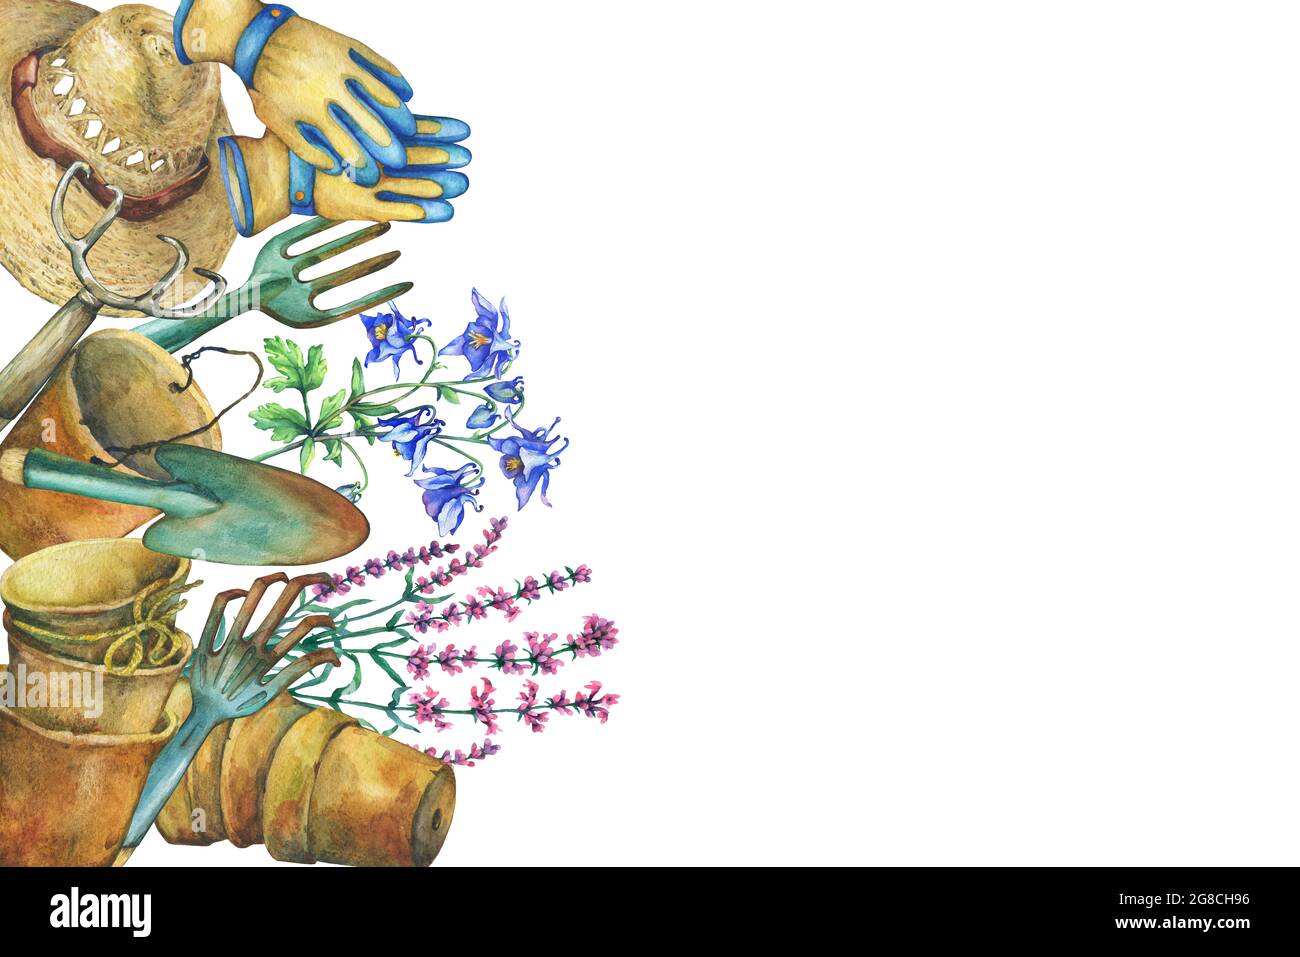 Grenze mit Gartengeräten, Sonnenhut, Handschuhen, Terrakotta-Pflanzentöpfen und Blumen. Schaufel, Rechen, Pitchfork. Aquarell handgezeichnetes Gemälde illustrati Stockfoto